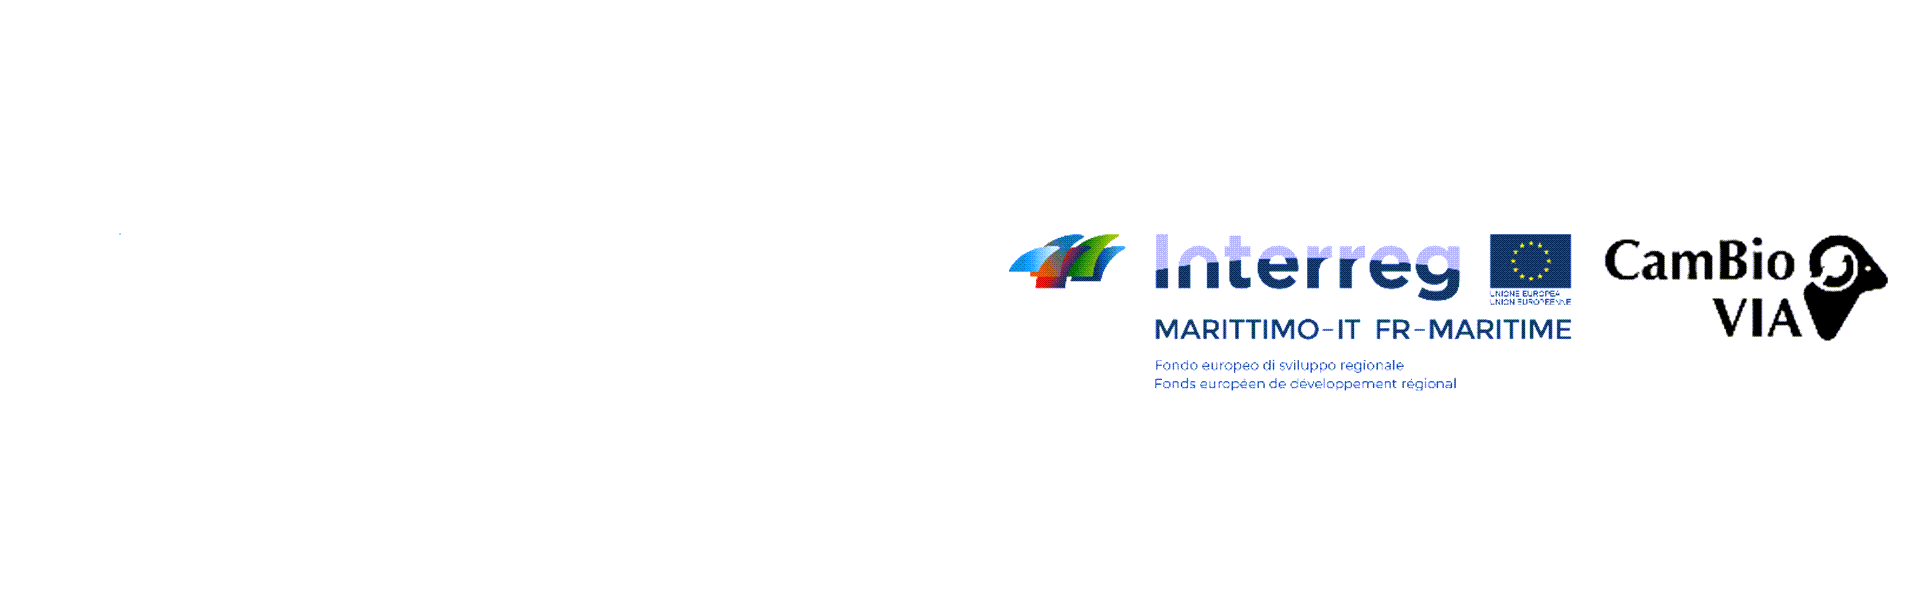 logo del progetto interreg cambio via